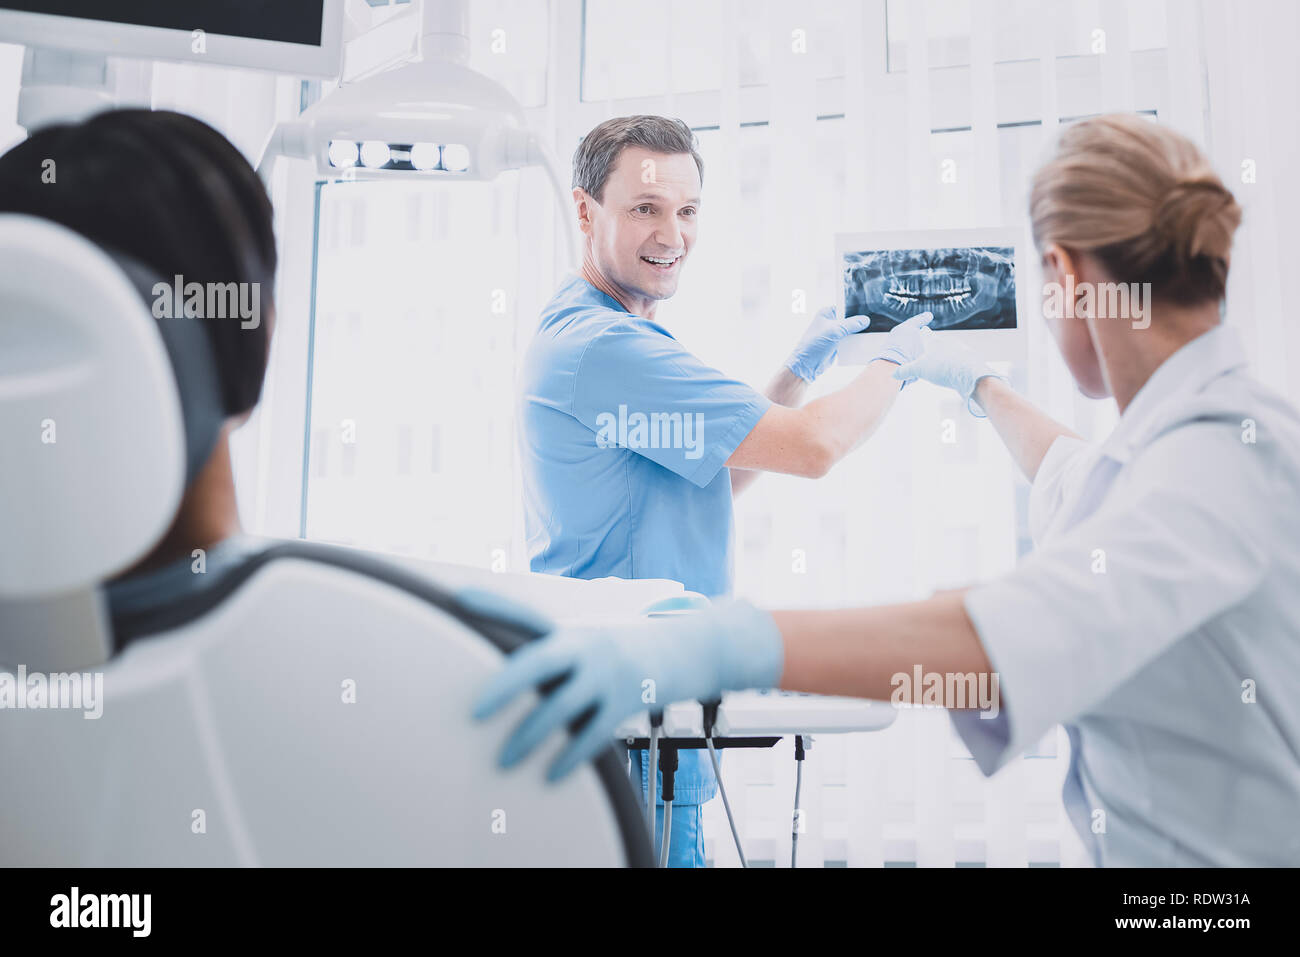 Freundliche männliche Person zeigt x-ray Bild zu Kollegen Stockfoto